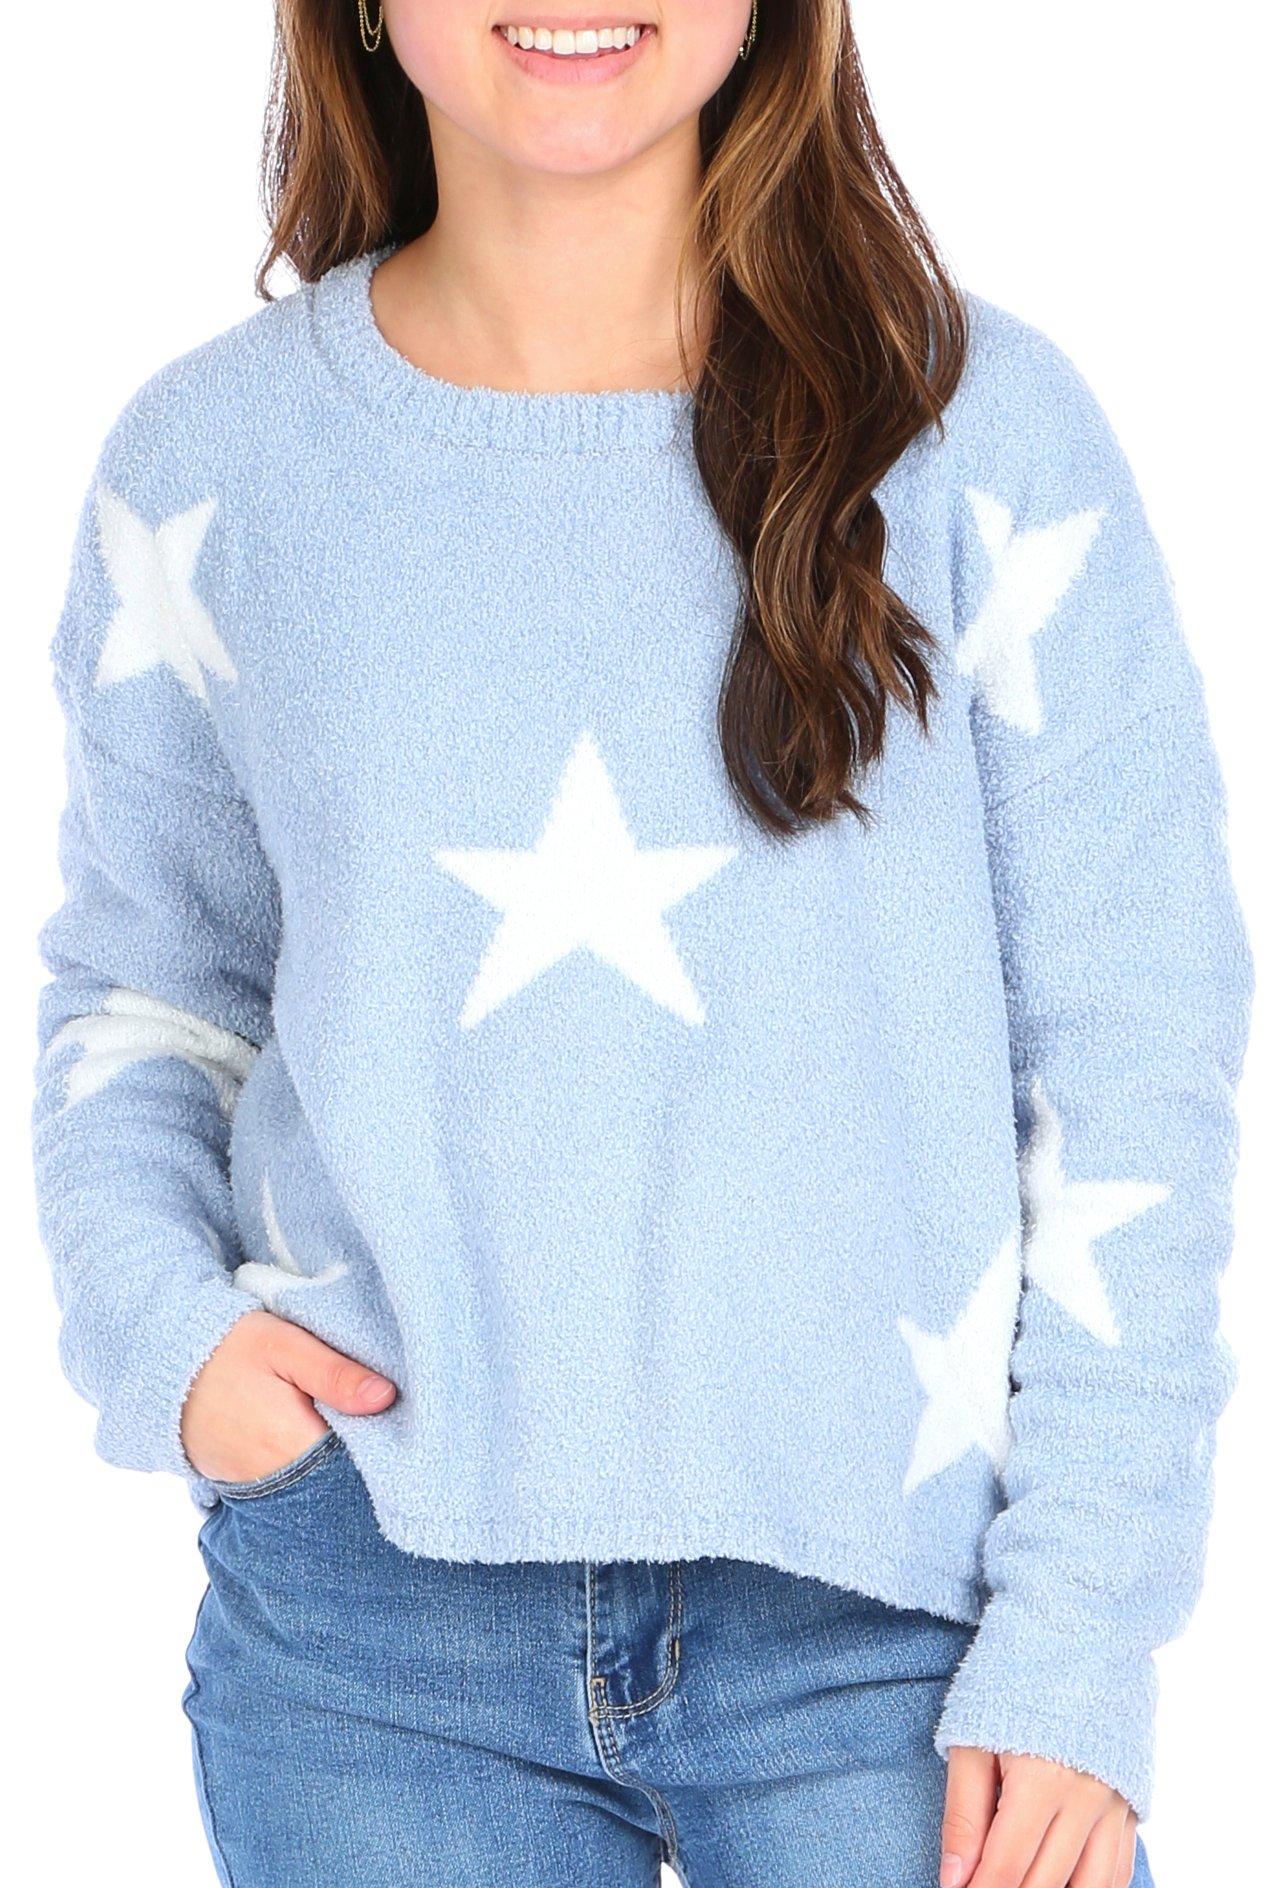 Juniors Fuzzy Stars Sweater